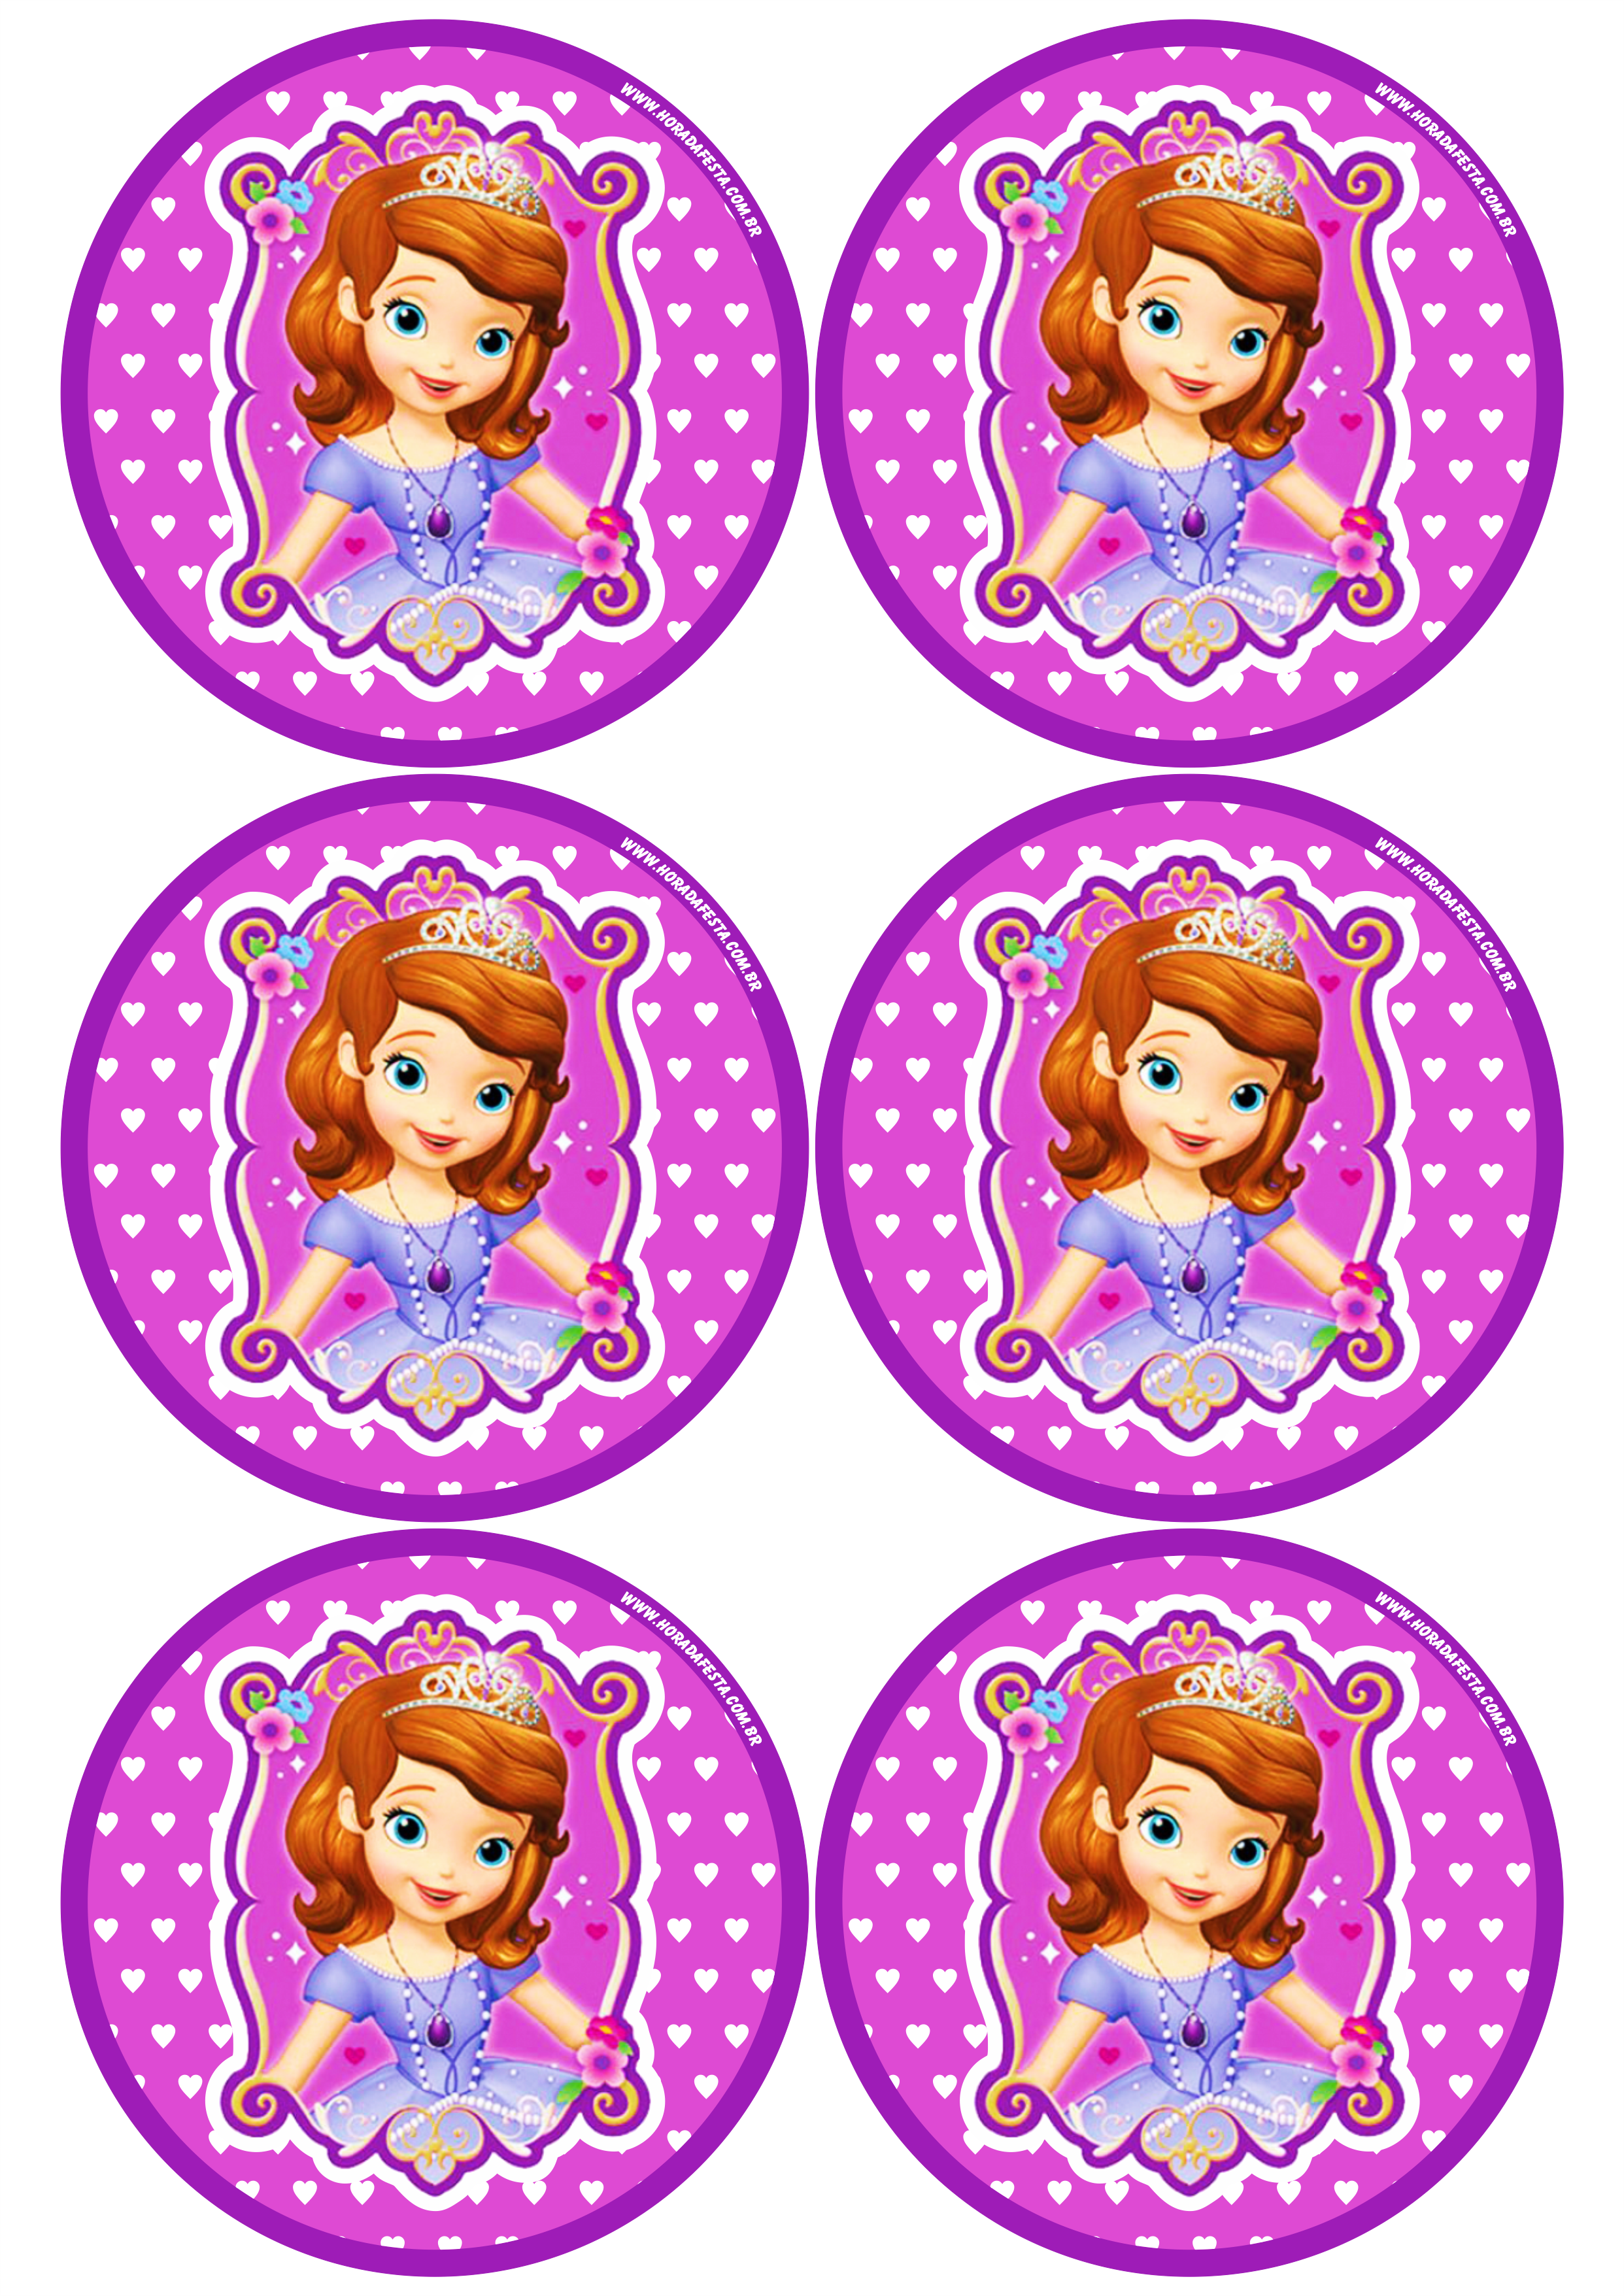 Princesa Sofia adesivo redondo tag sticker painel festa de aniversário infantil menina 6 imagens png